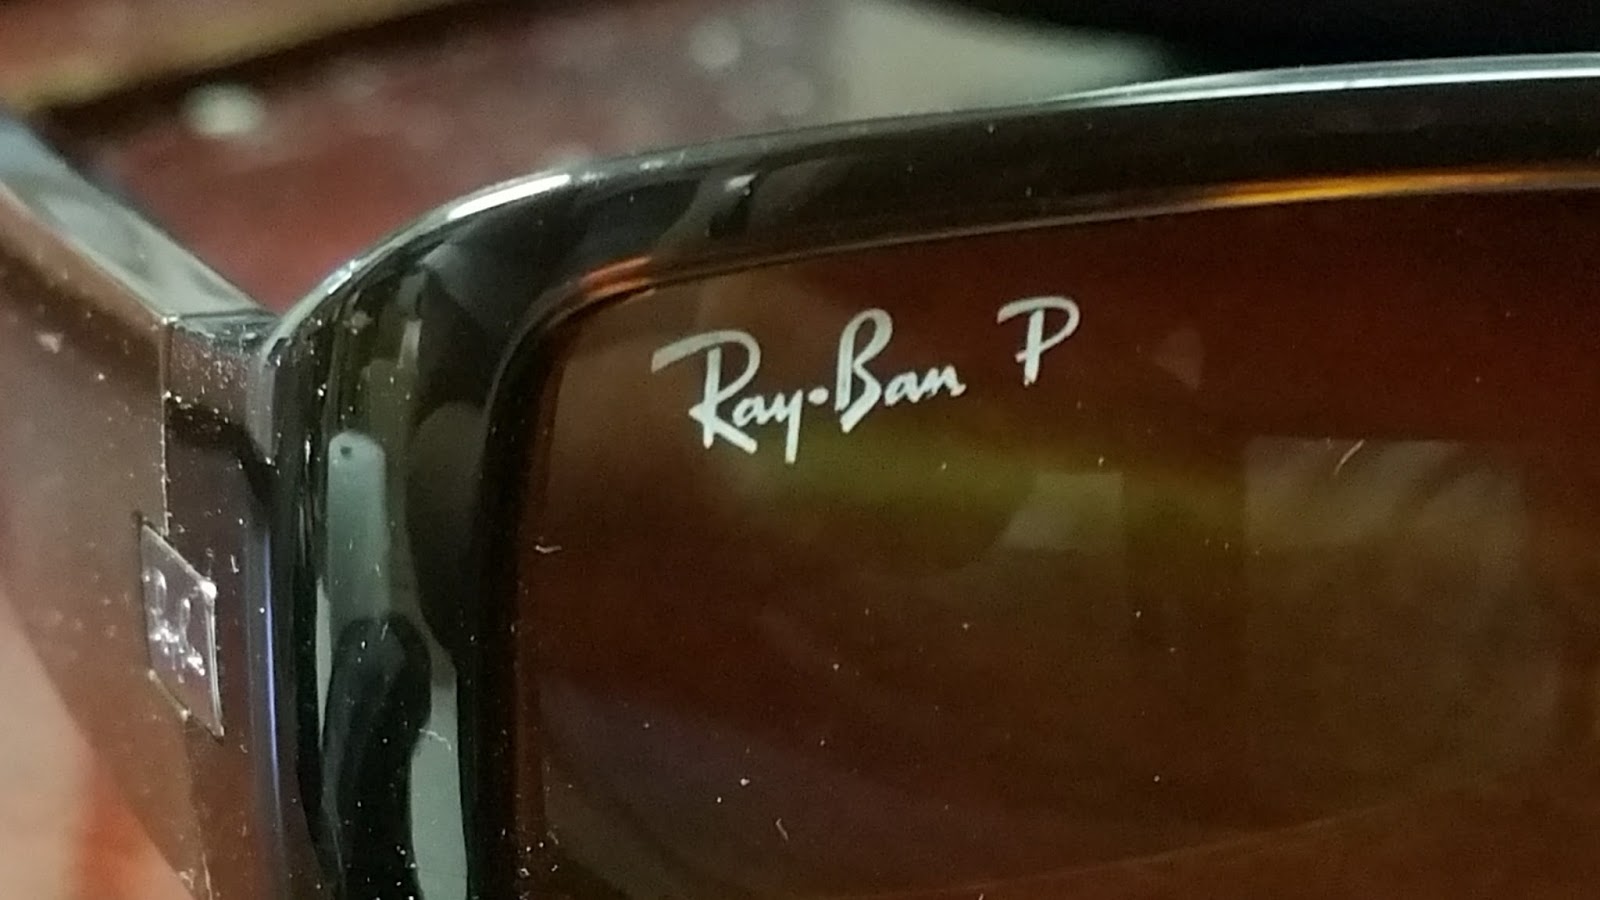 ray ban p logo